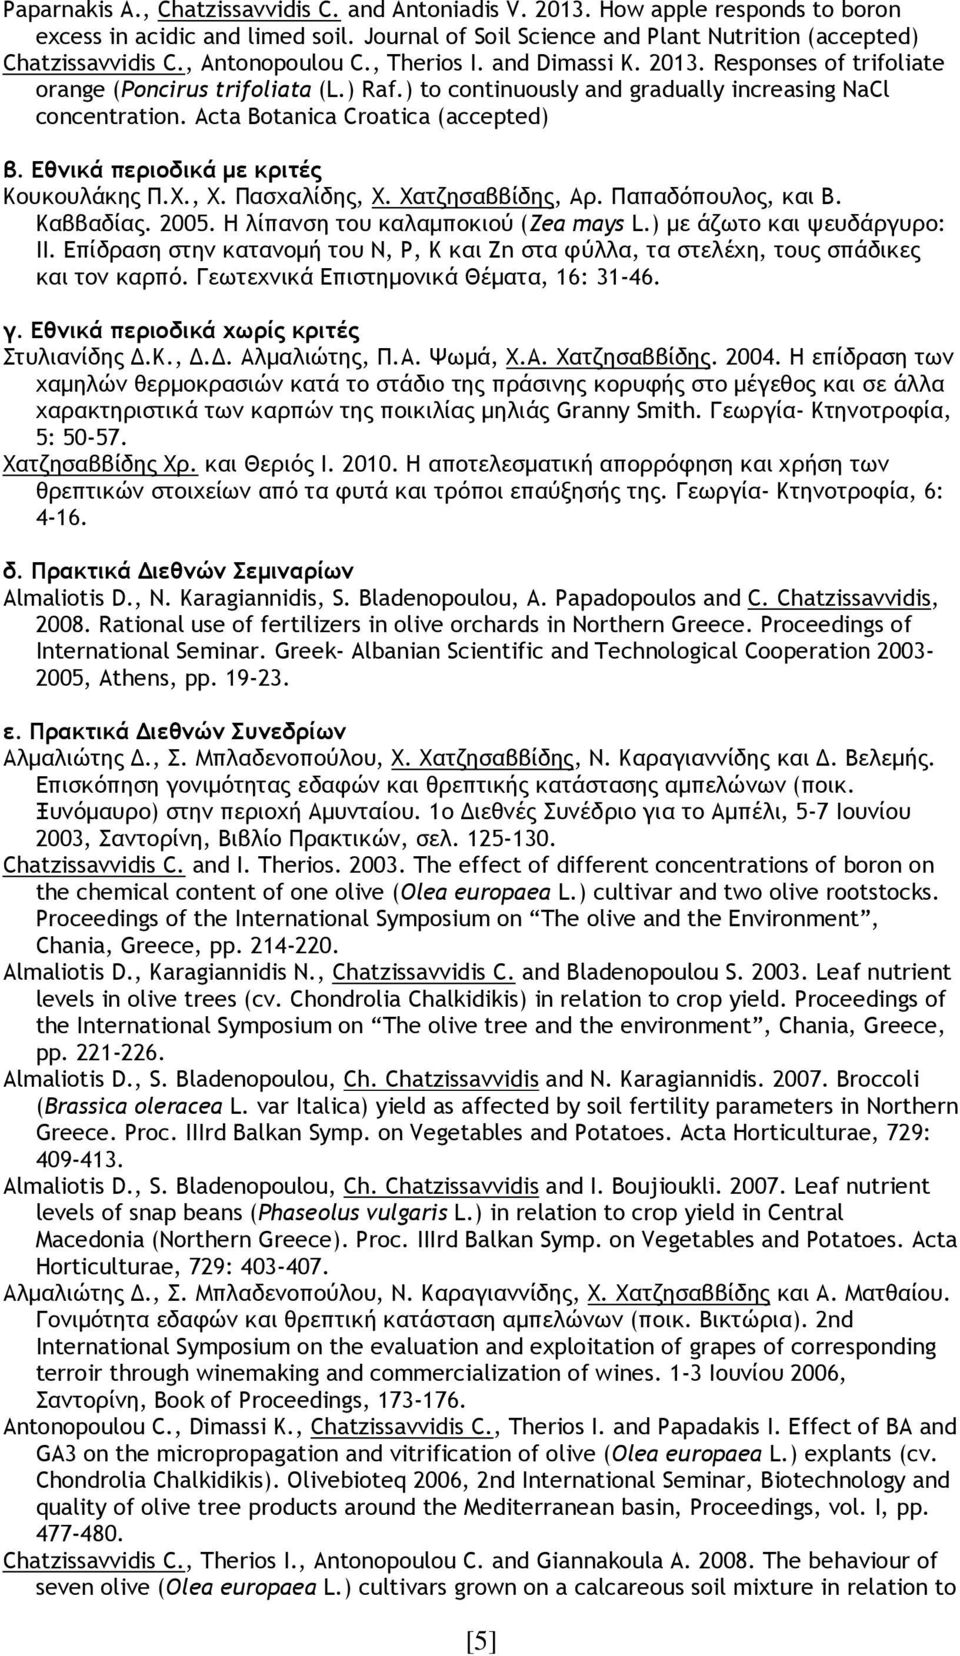 Acta Botanica Croatica (accepted) β. Εθνικά περιοδικά µε κριτές Κουκουλάκης Π.Χ., Χ. Πασχαλίδης, Χ. Χατζησαββίδης, Αρ. Παπαδόπουλος, και Β. Καββαδίας. 2005. Η λίπανση του καλαµποκιού (Zea mays L.